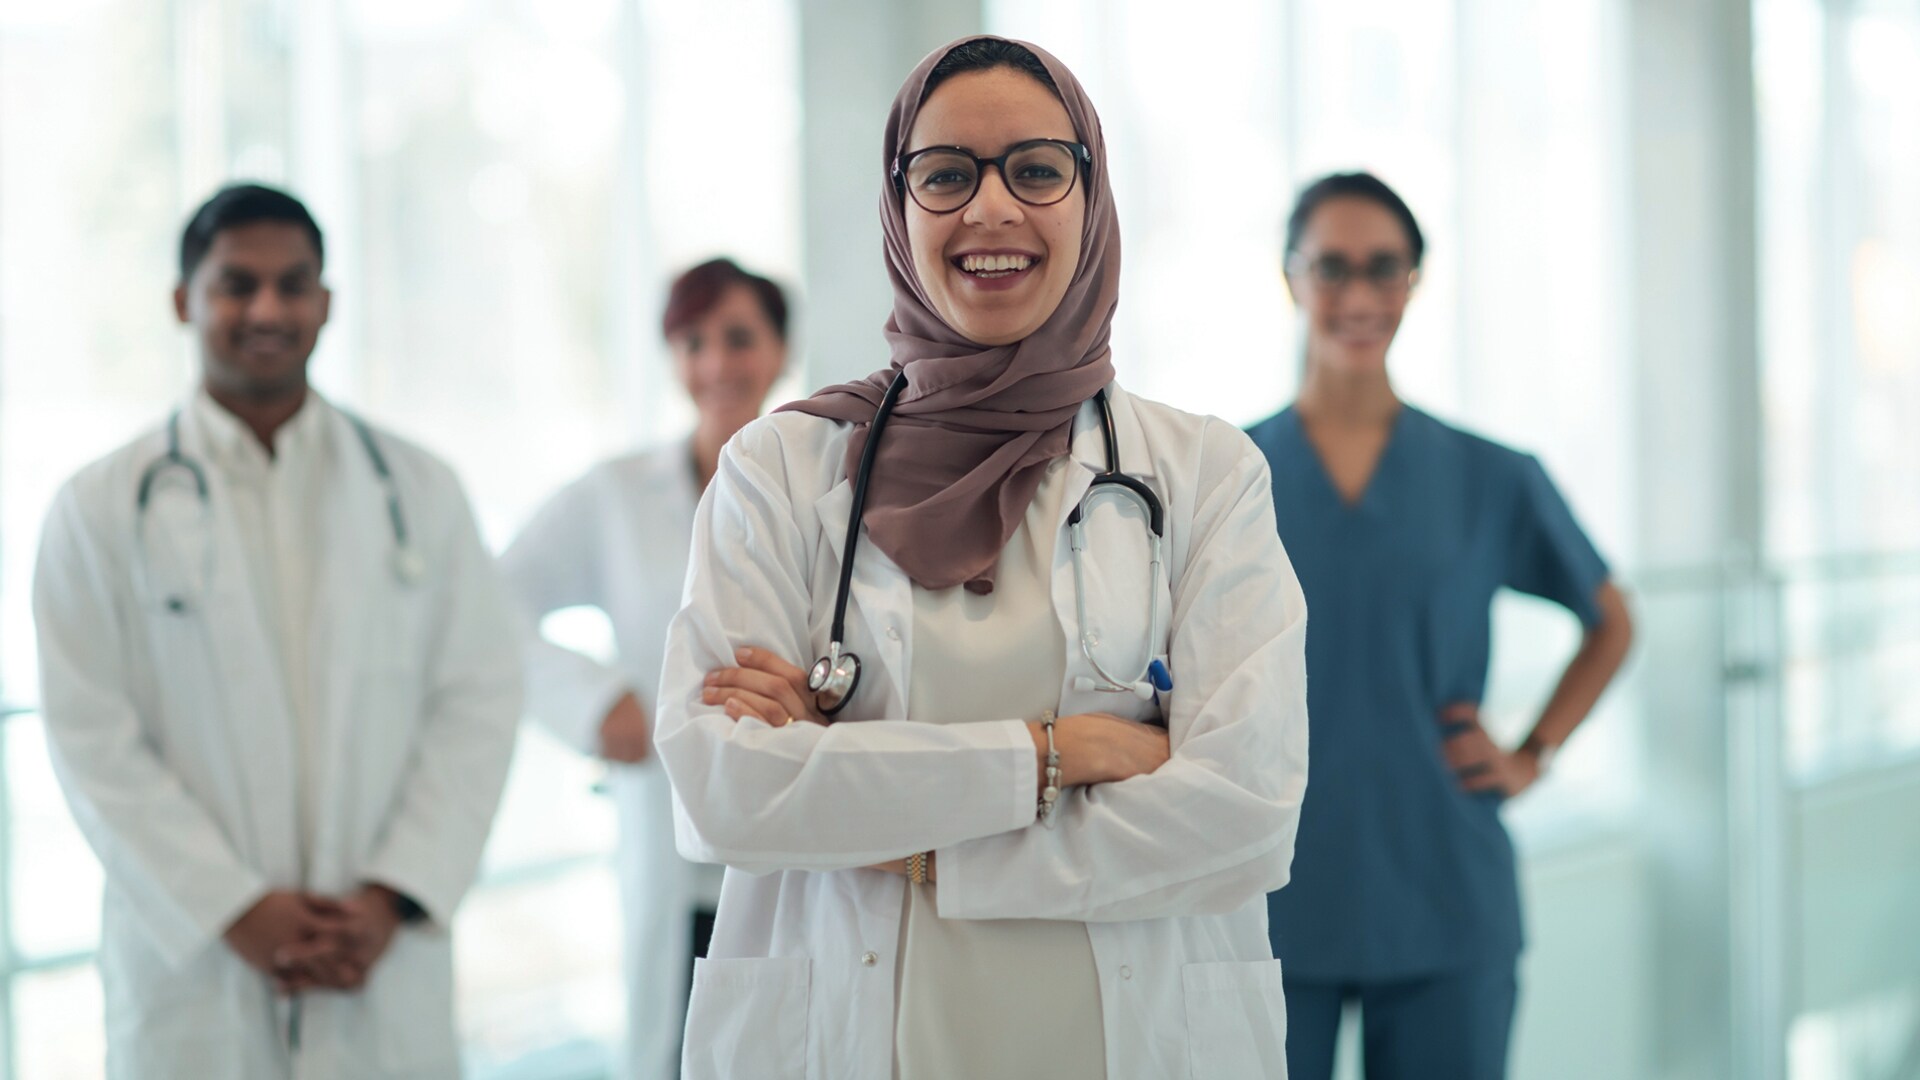 تقرير مؤشر الصحة المستقبلية 2021 من شركة فيليبس يشير إلى تبدّل أولويات قادة قطاع الرعاية الصحية في المملكة العربية السعودية